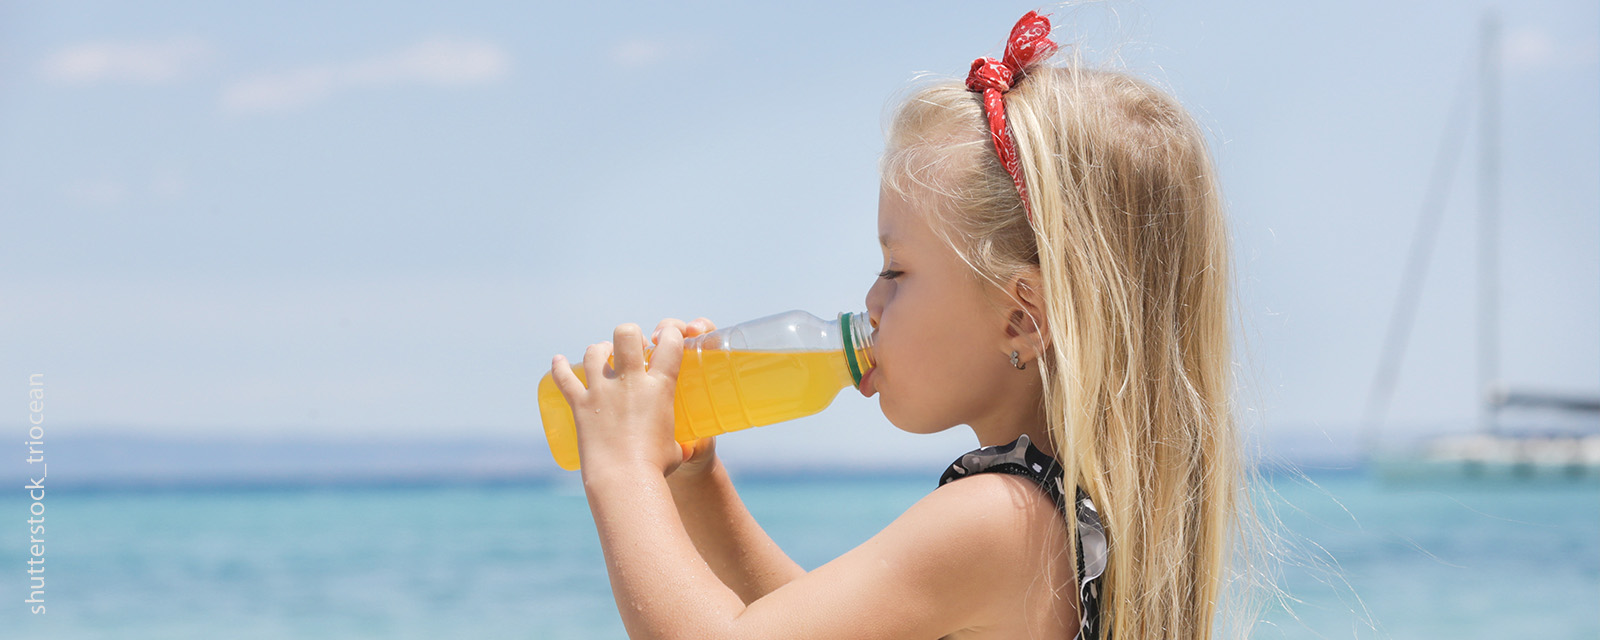 Ein Mädchen trinkt einen Saft am Meer